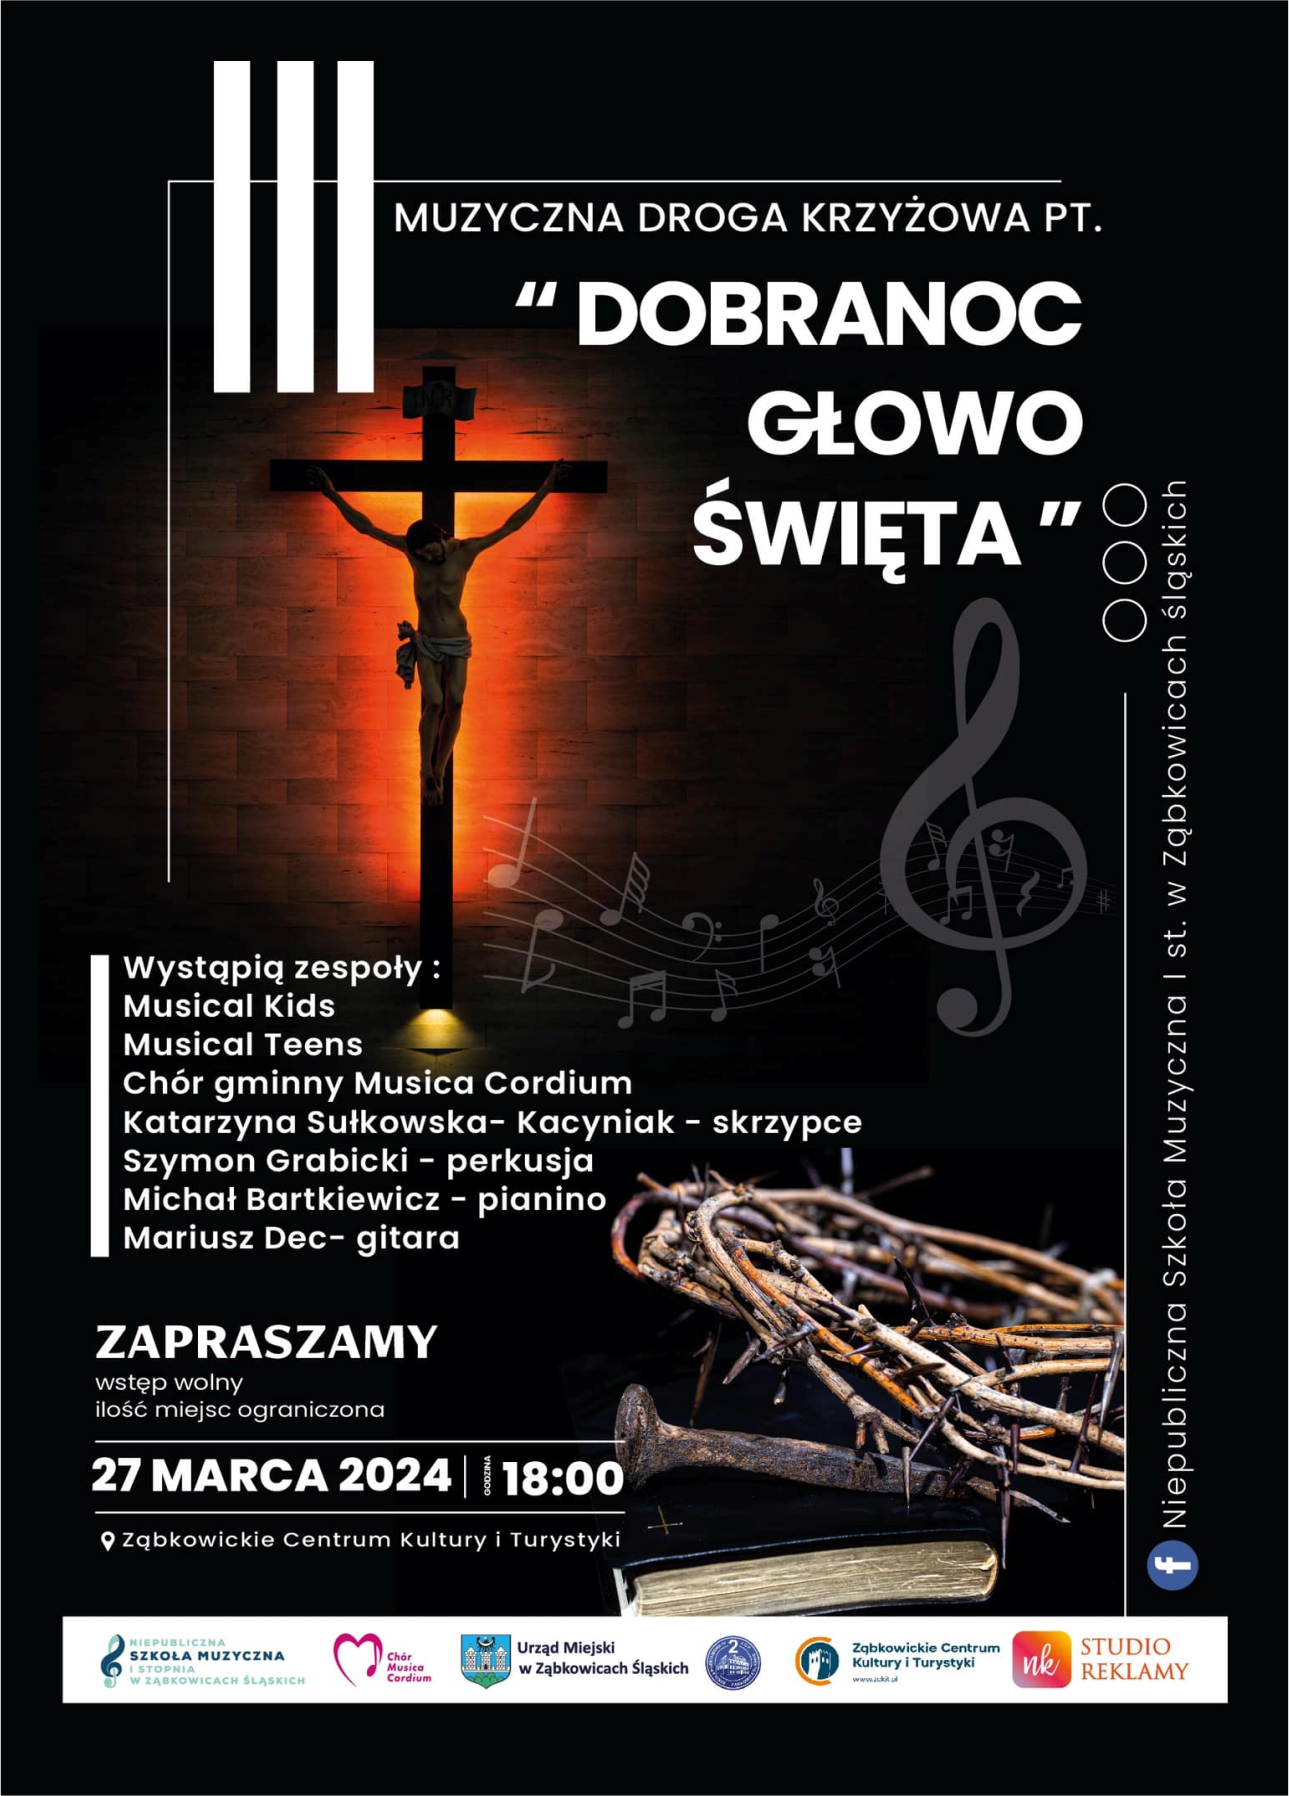 Plakat informacyjny o drodze krzyżowej pt. "Dobranoc Głowo Święta" 27 marca 2024 o godzinie 18:00 w Ząbkowickim Centrum Kultury i Turystyki.